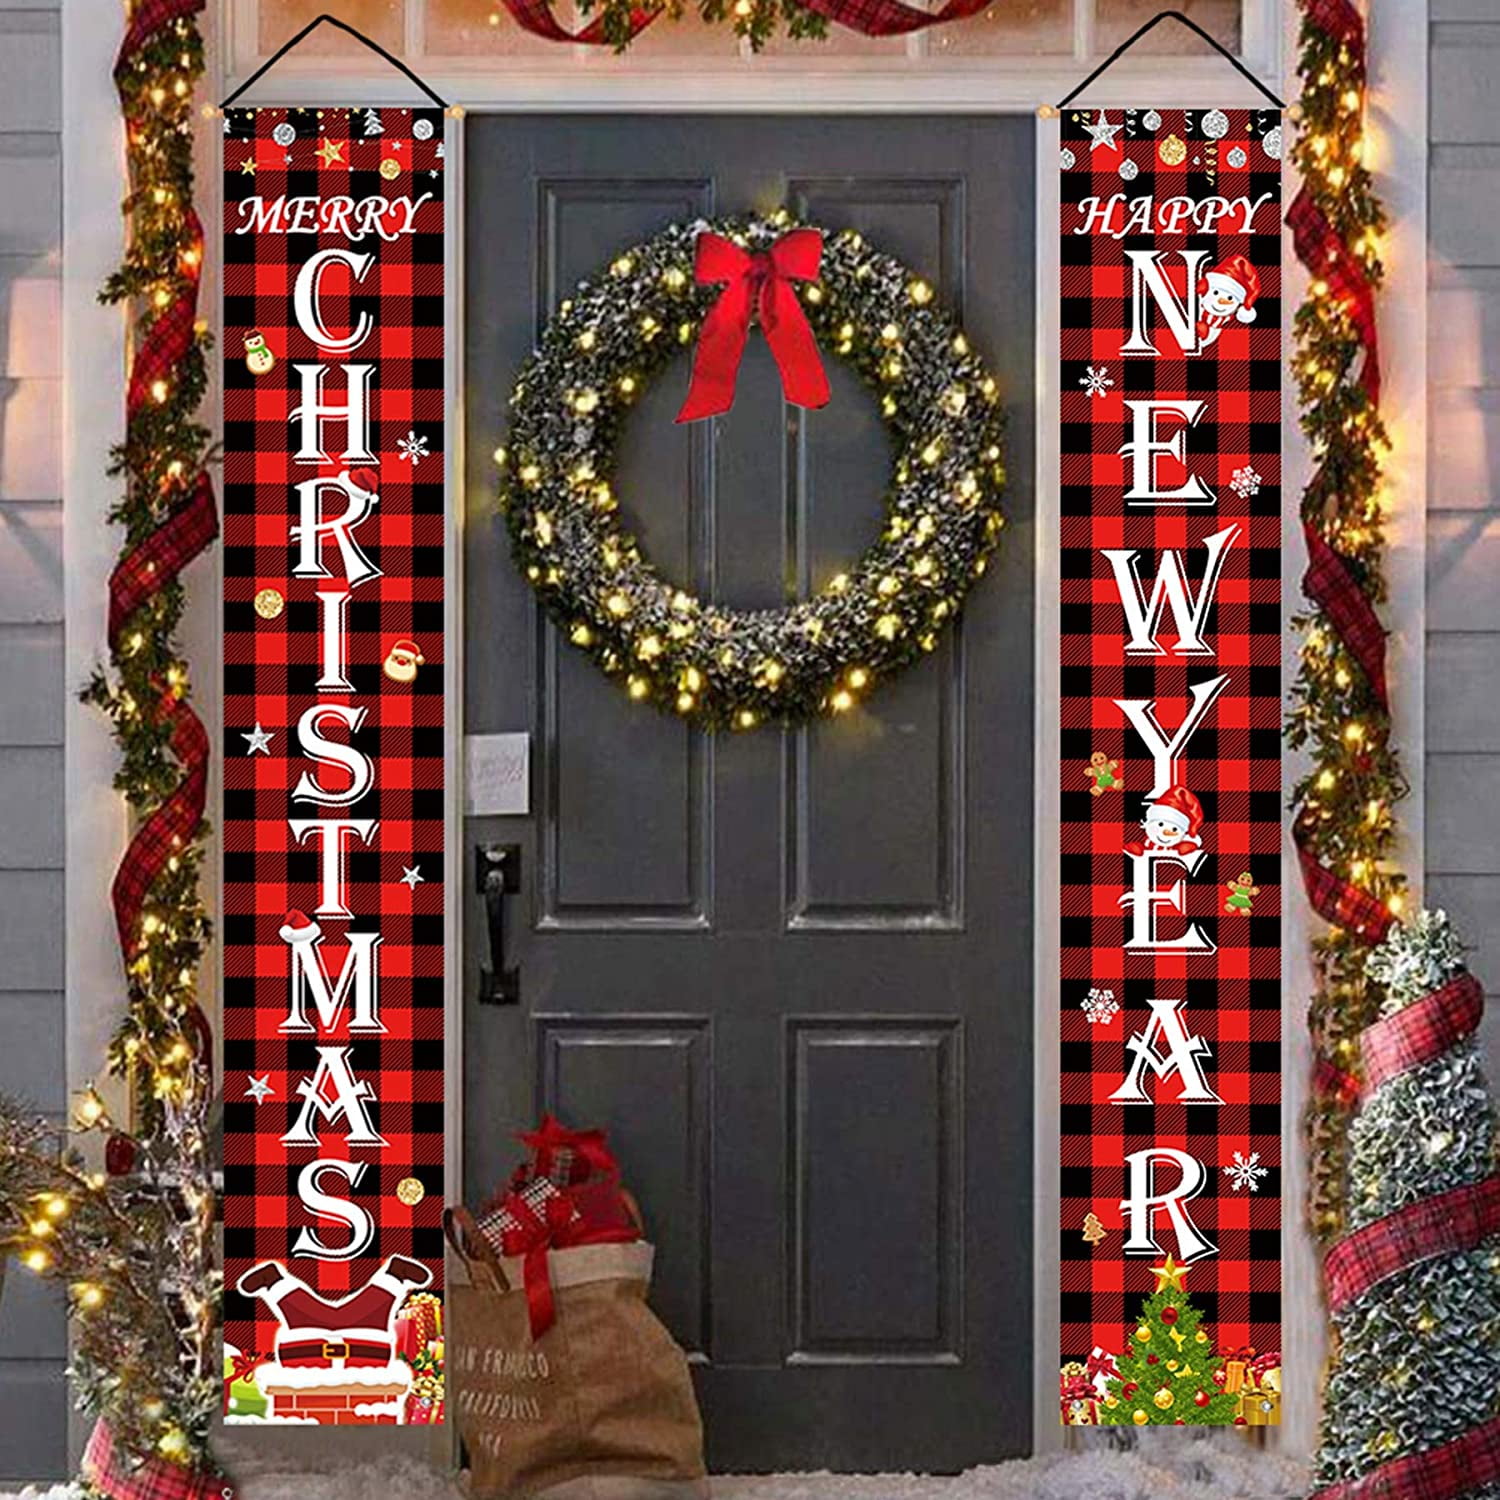 Merry Christmas Door Decor Indoor or Outdoor Banner Front Door Porch Sign for Xmas Party Wall Window Dwarf 